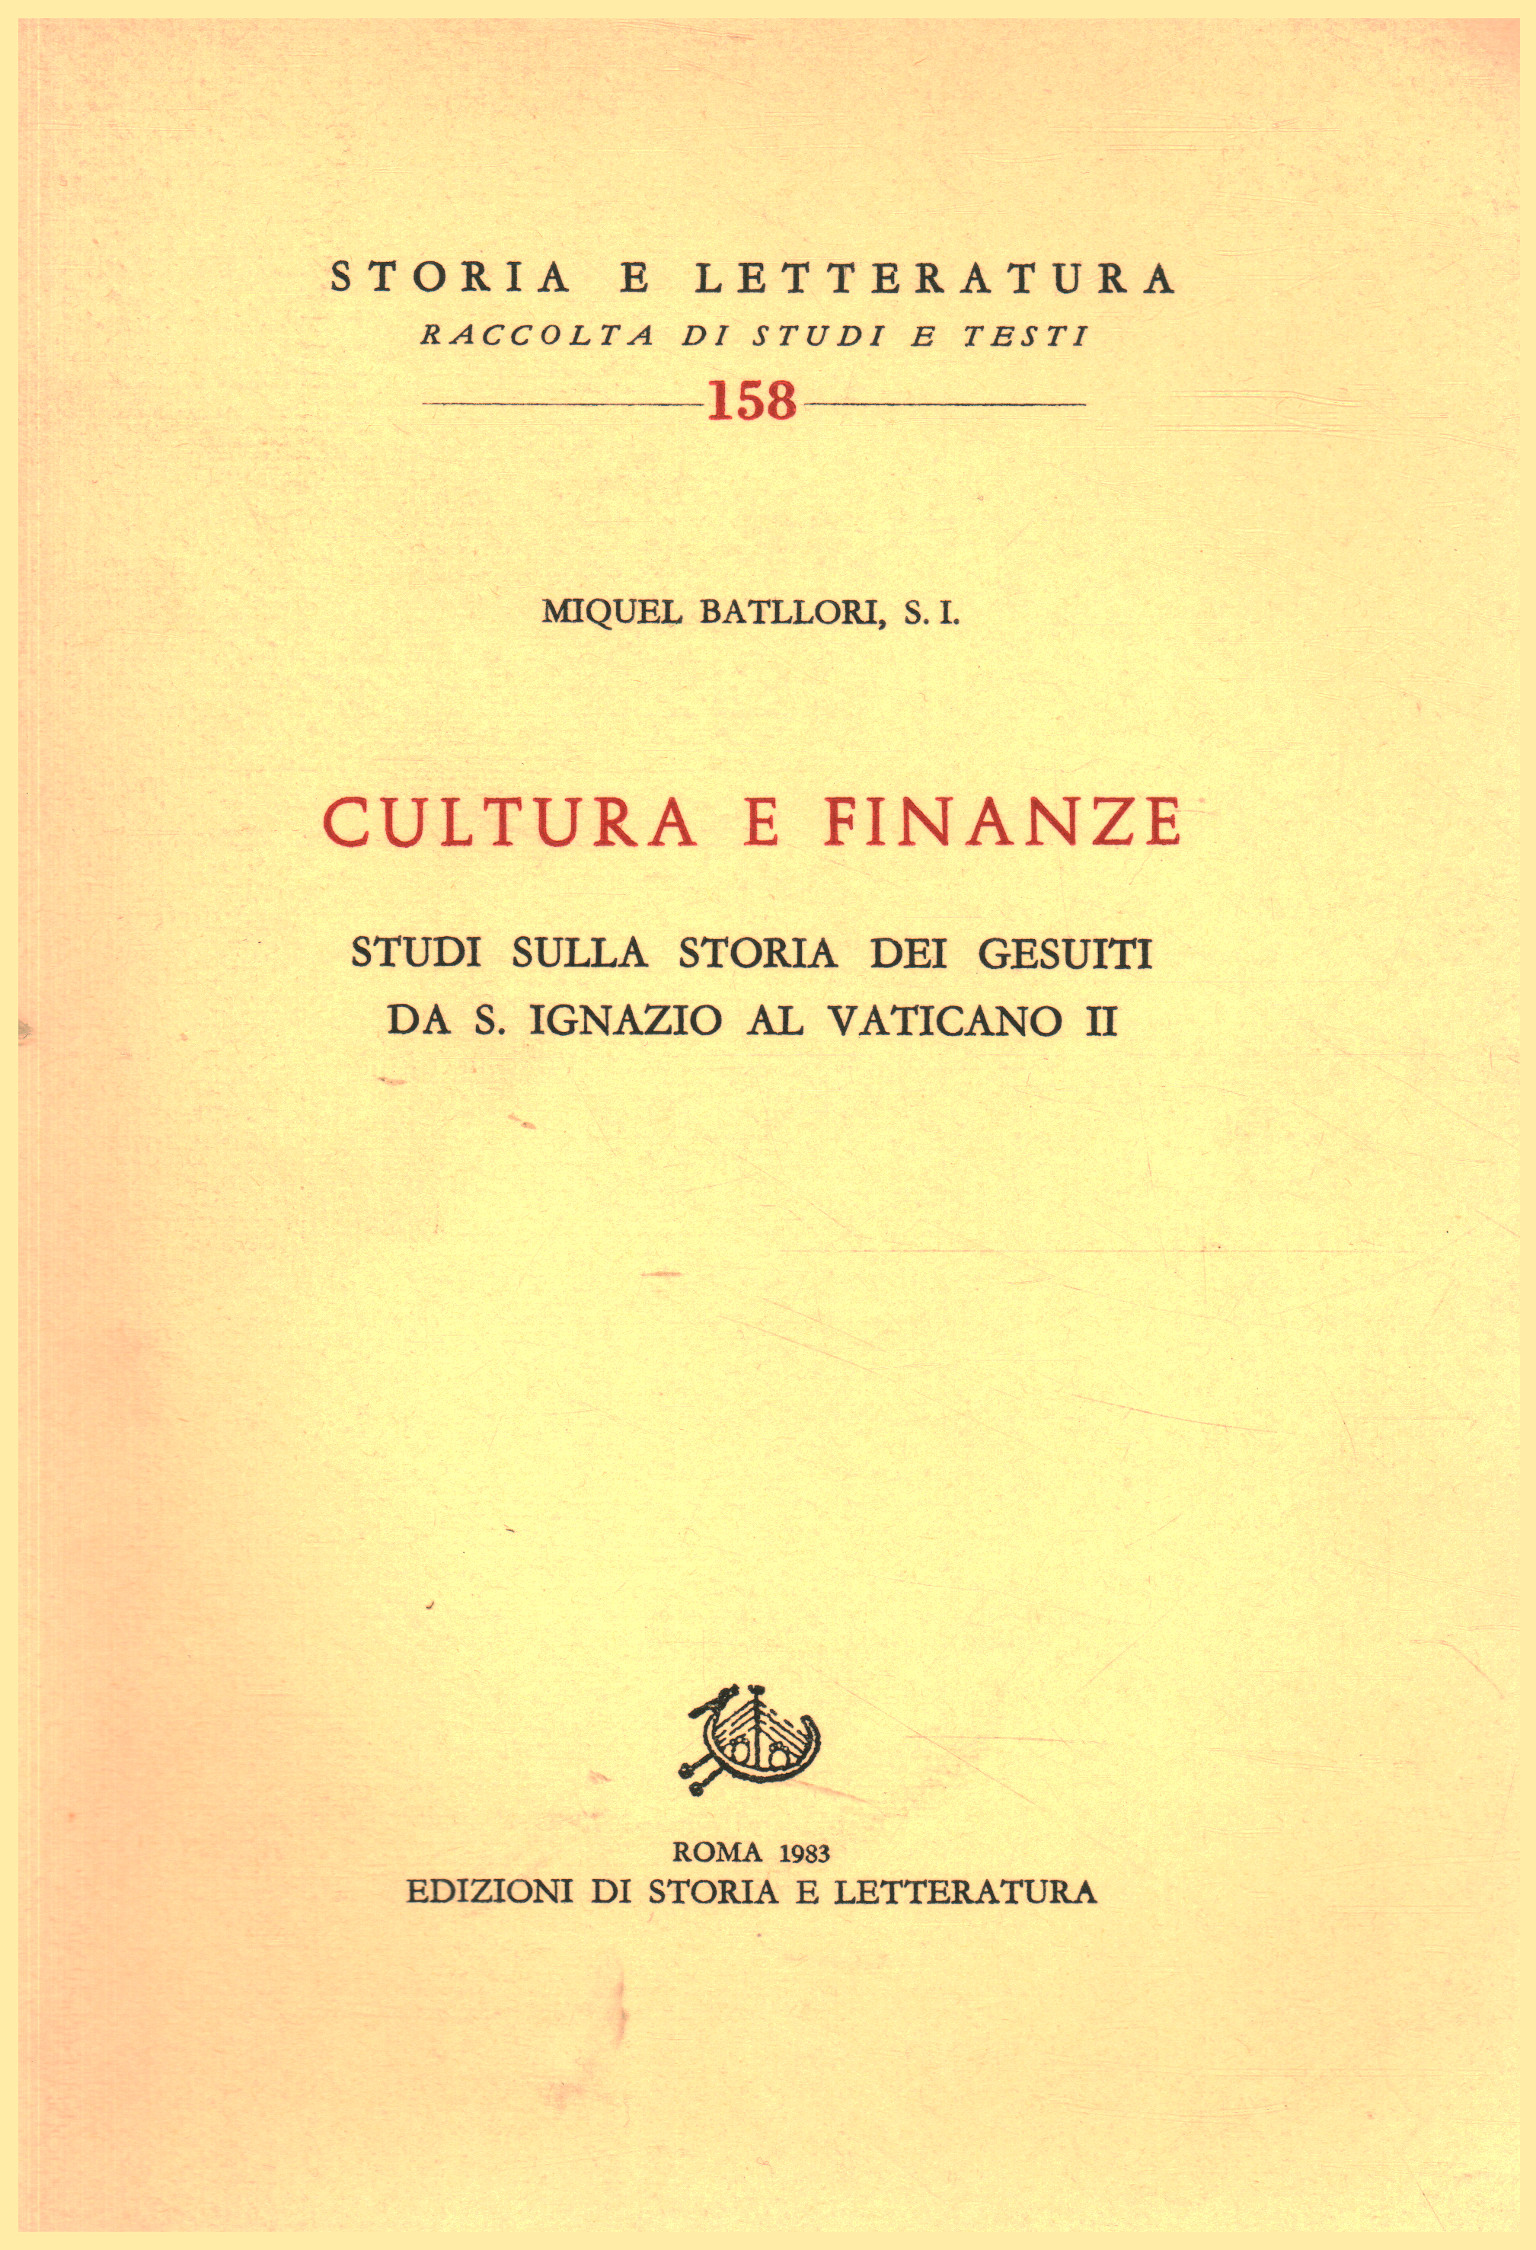 Kultur und Finanzen, Miquel Batllori